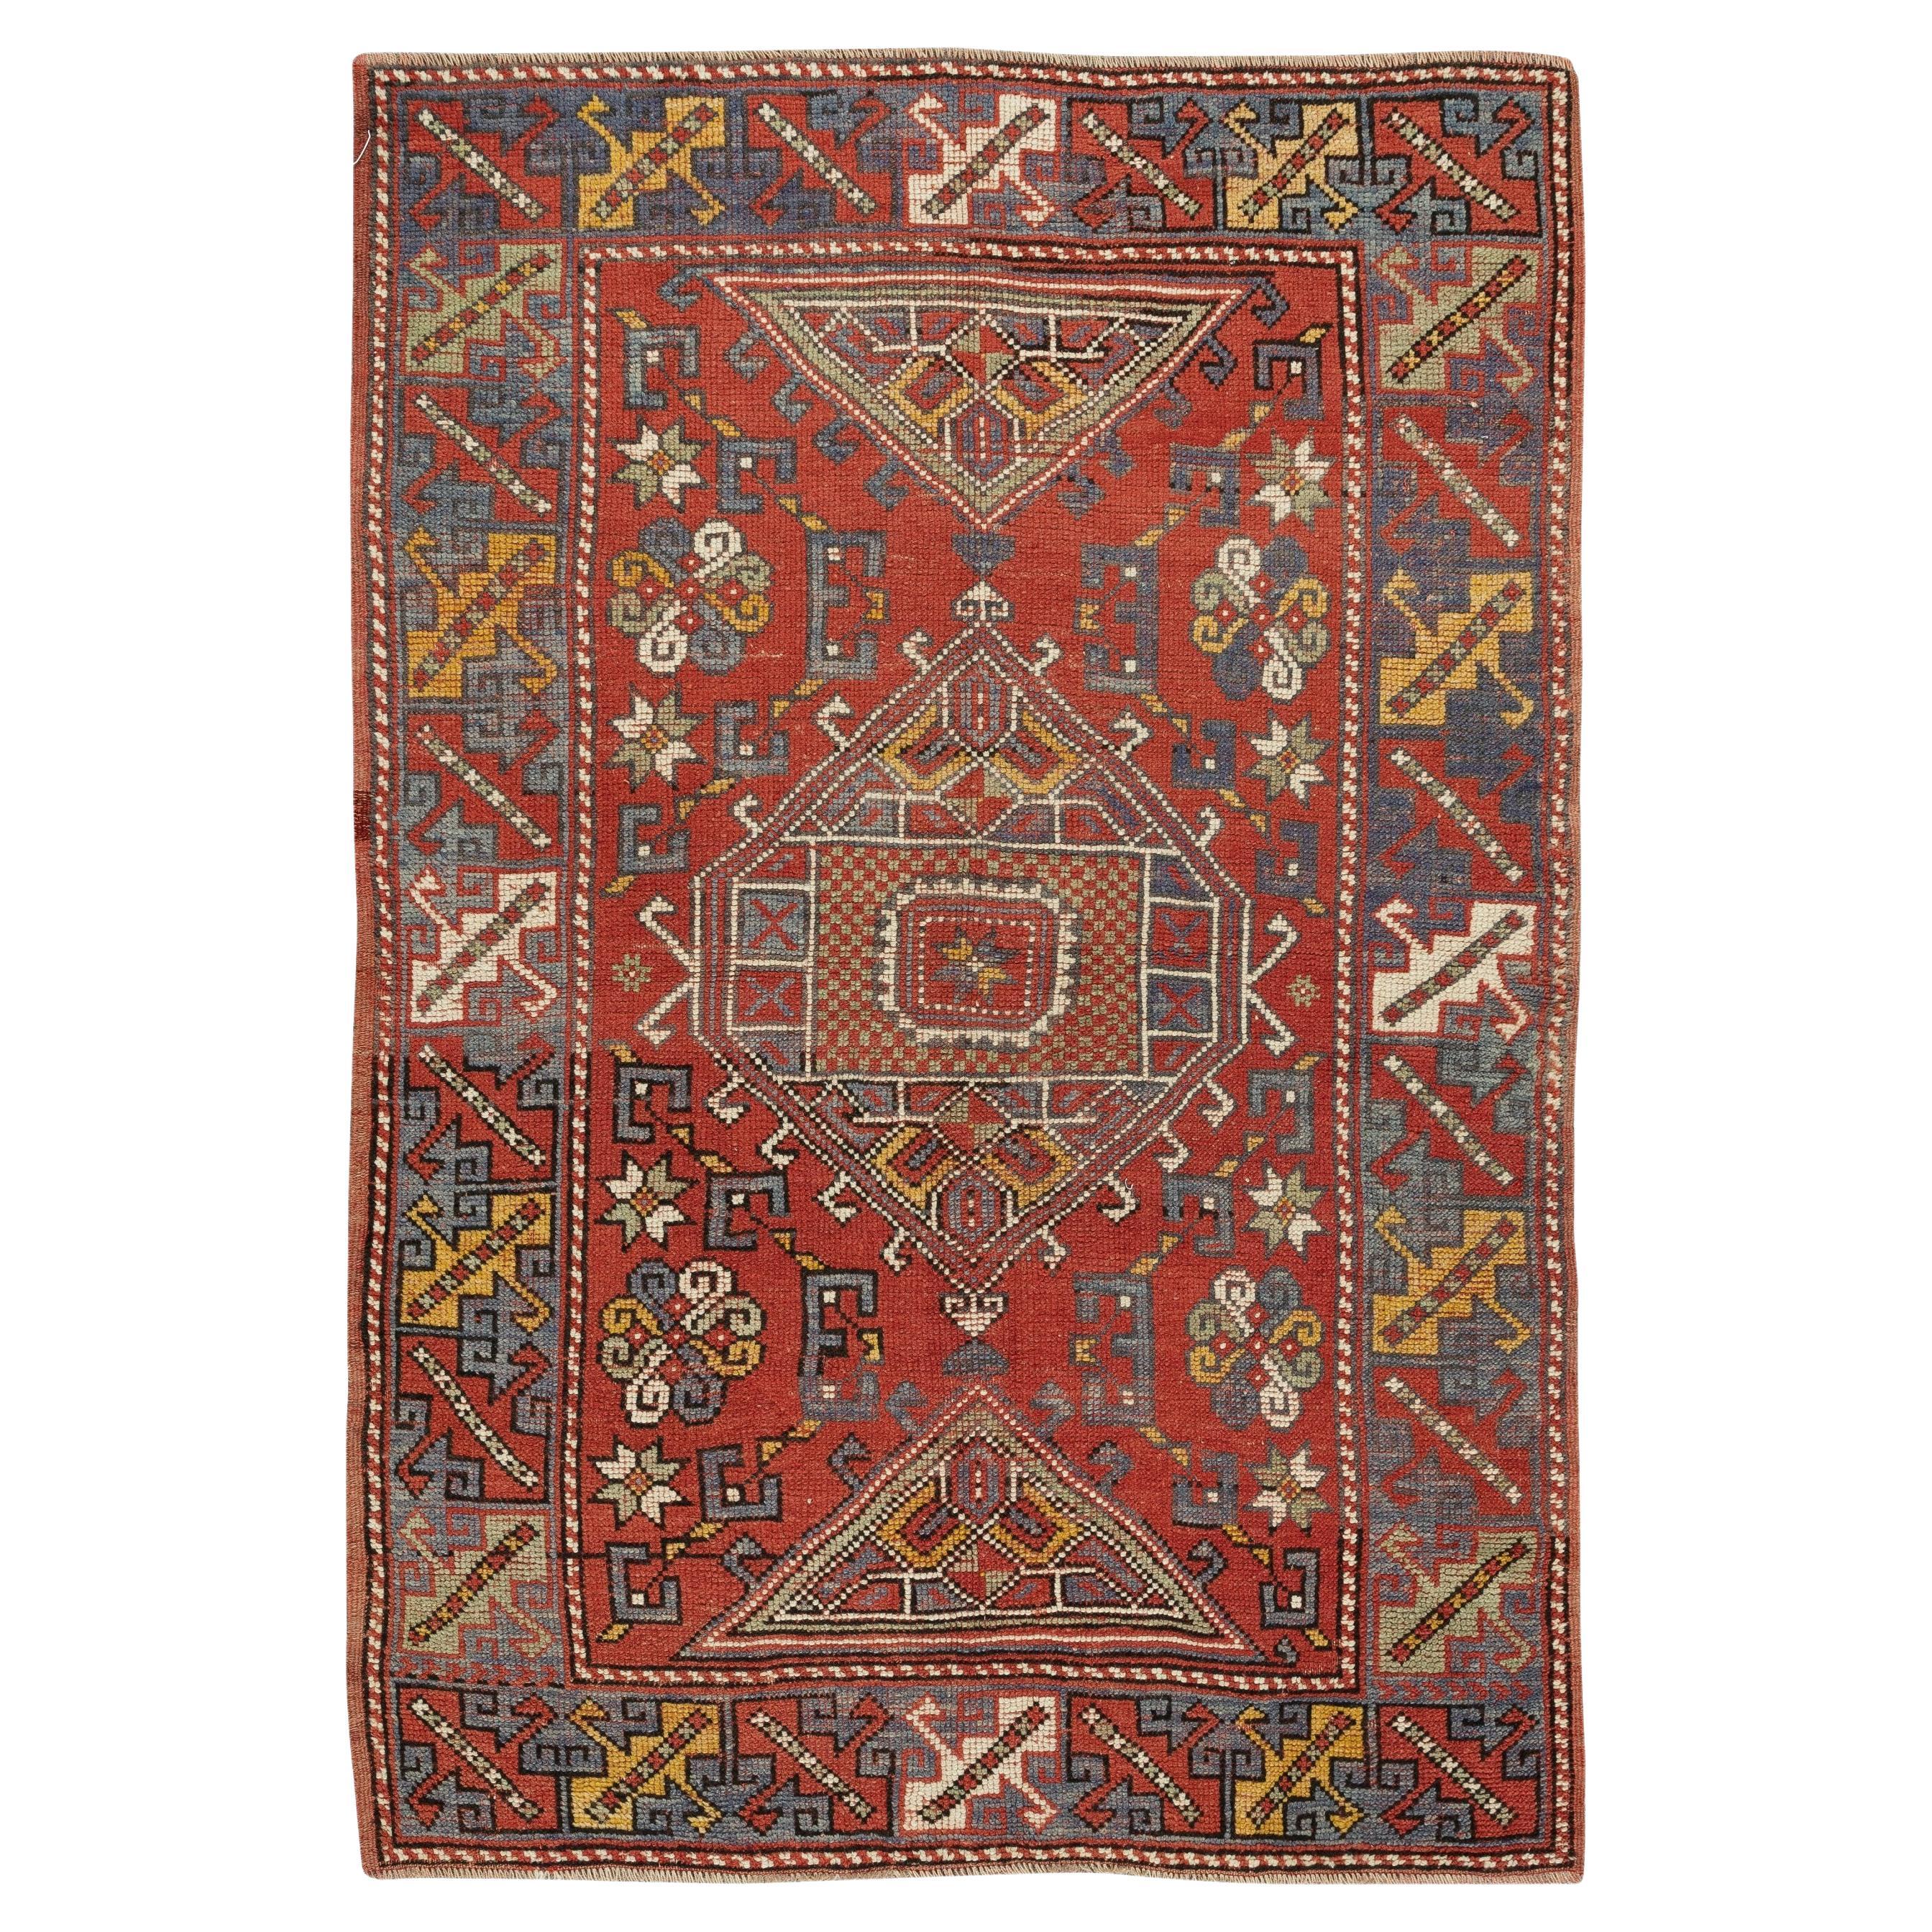 Handmade Red Turkish Area Rug, Vintage Geometric Design Wool Carpet